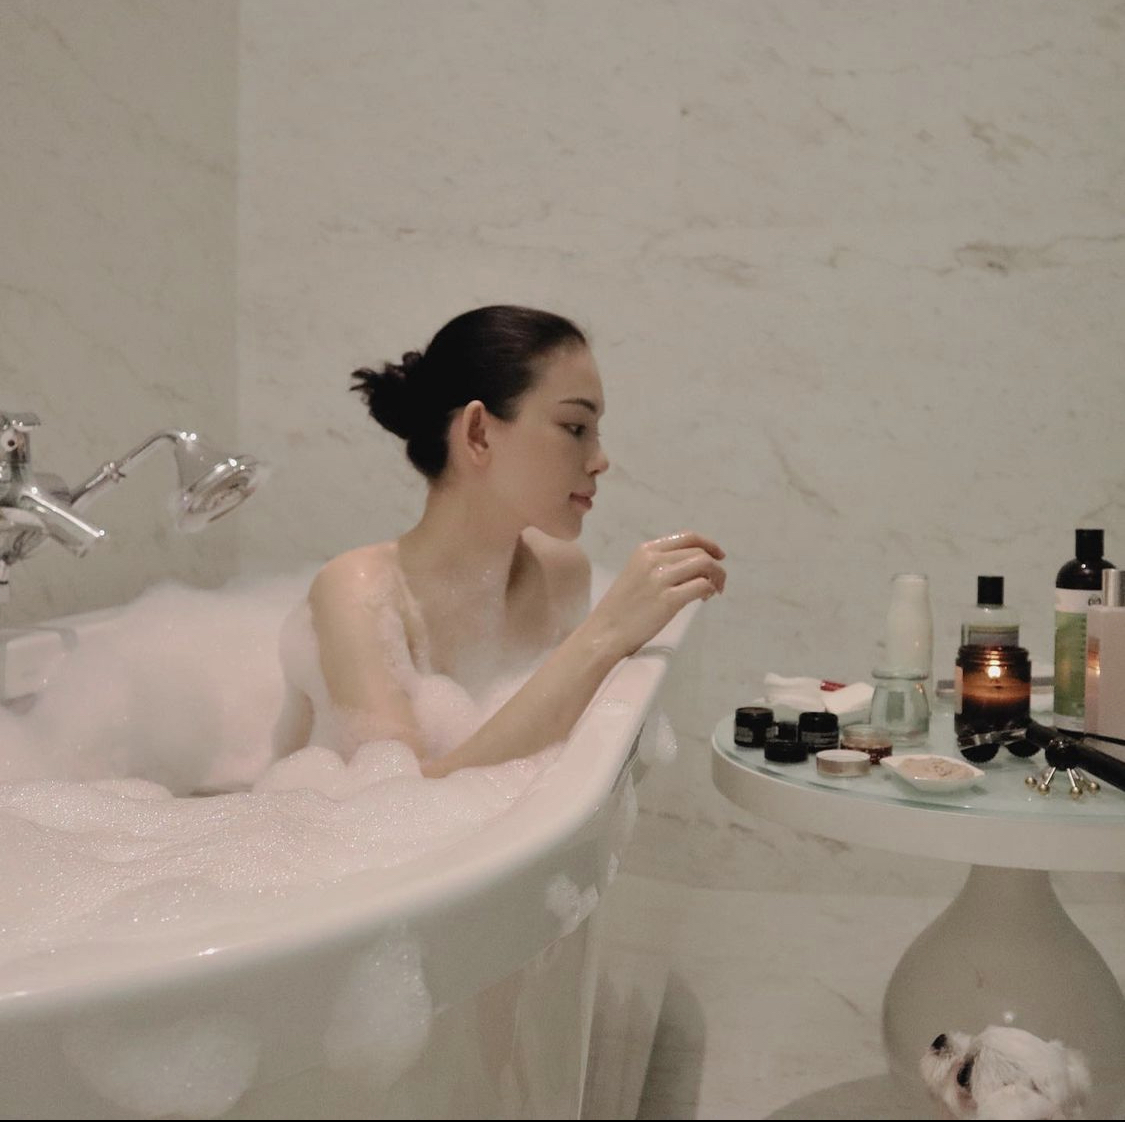 Khoe khoảnh khắc ngâm mình trong bồn tắm, Linh Rin khiến dân tình trầm trồ với nhan sắc xinh đẹp của mình.